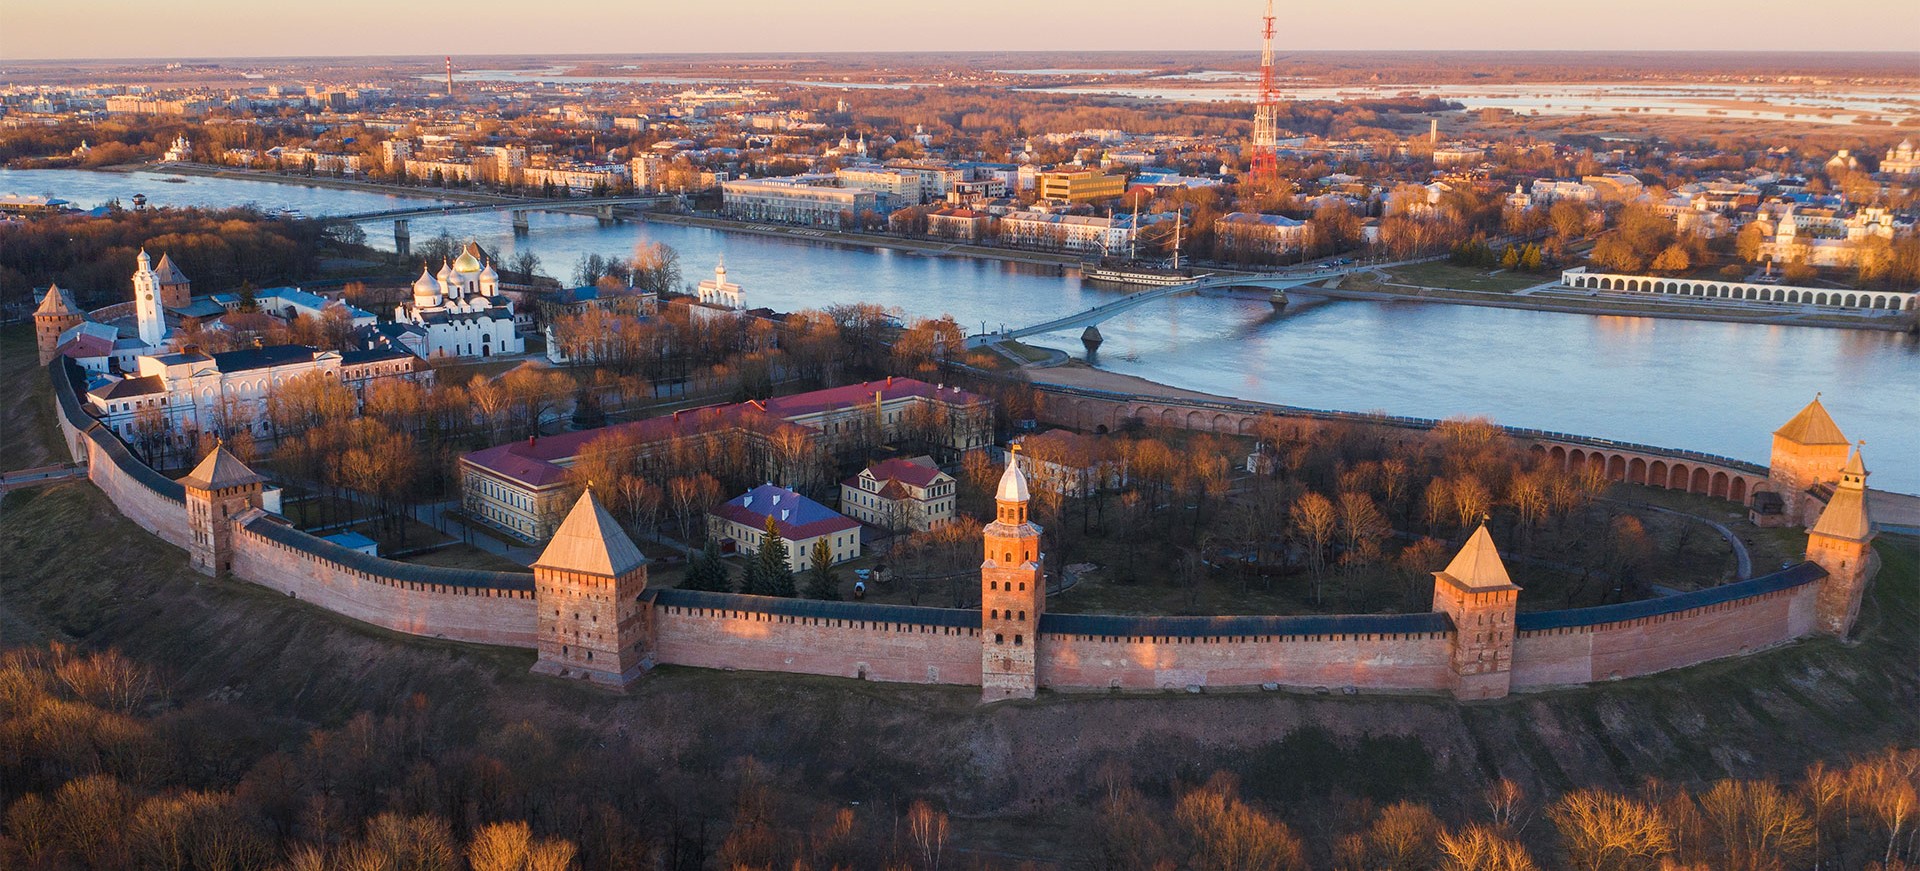 City Veliky Novgorod